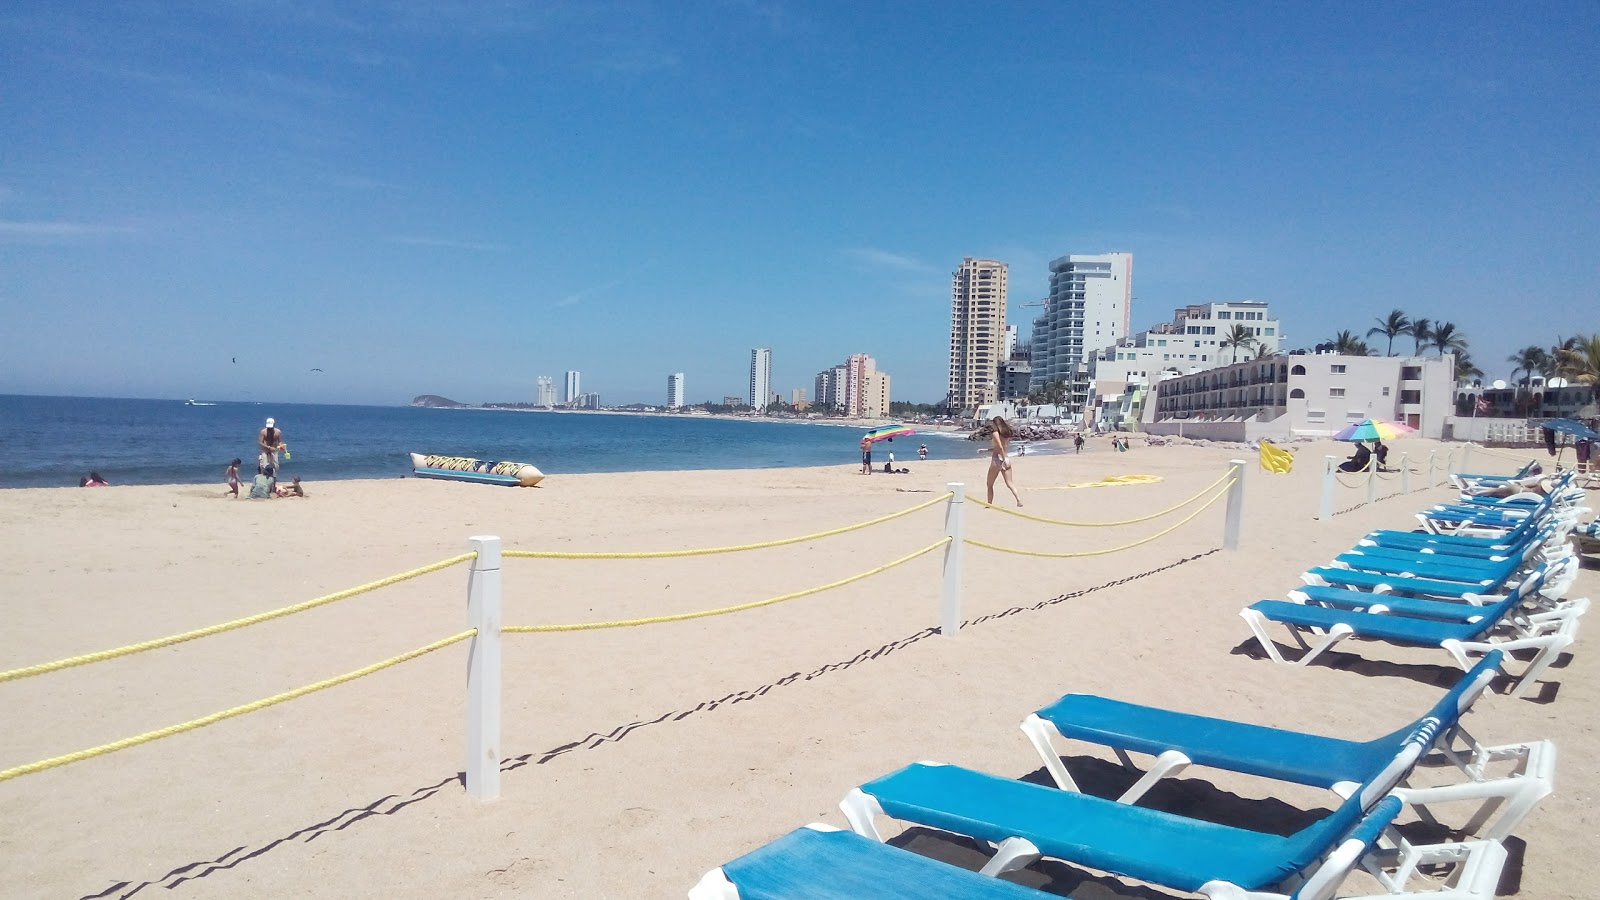 Fotografie cu Cerritos beach cu nivelul de curățenie înalt